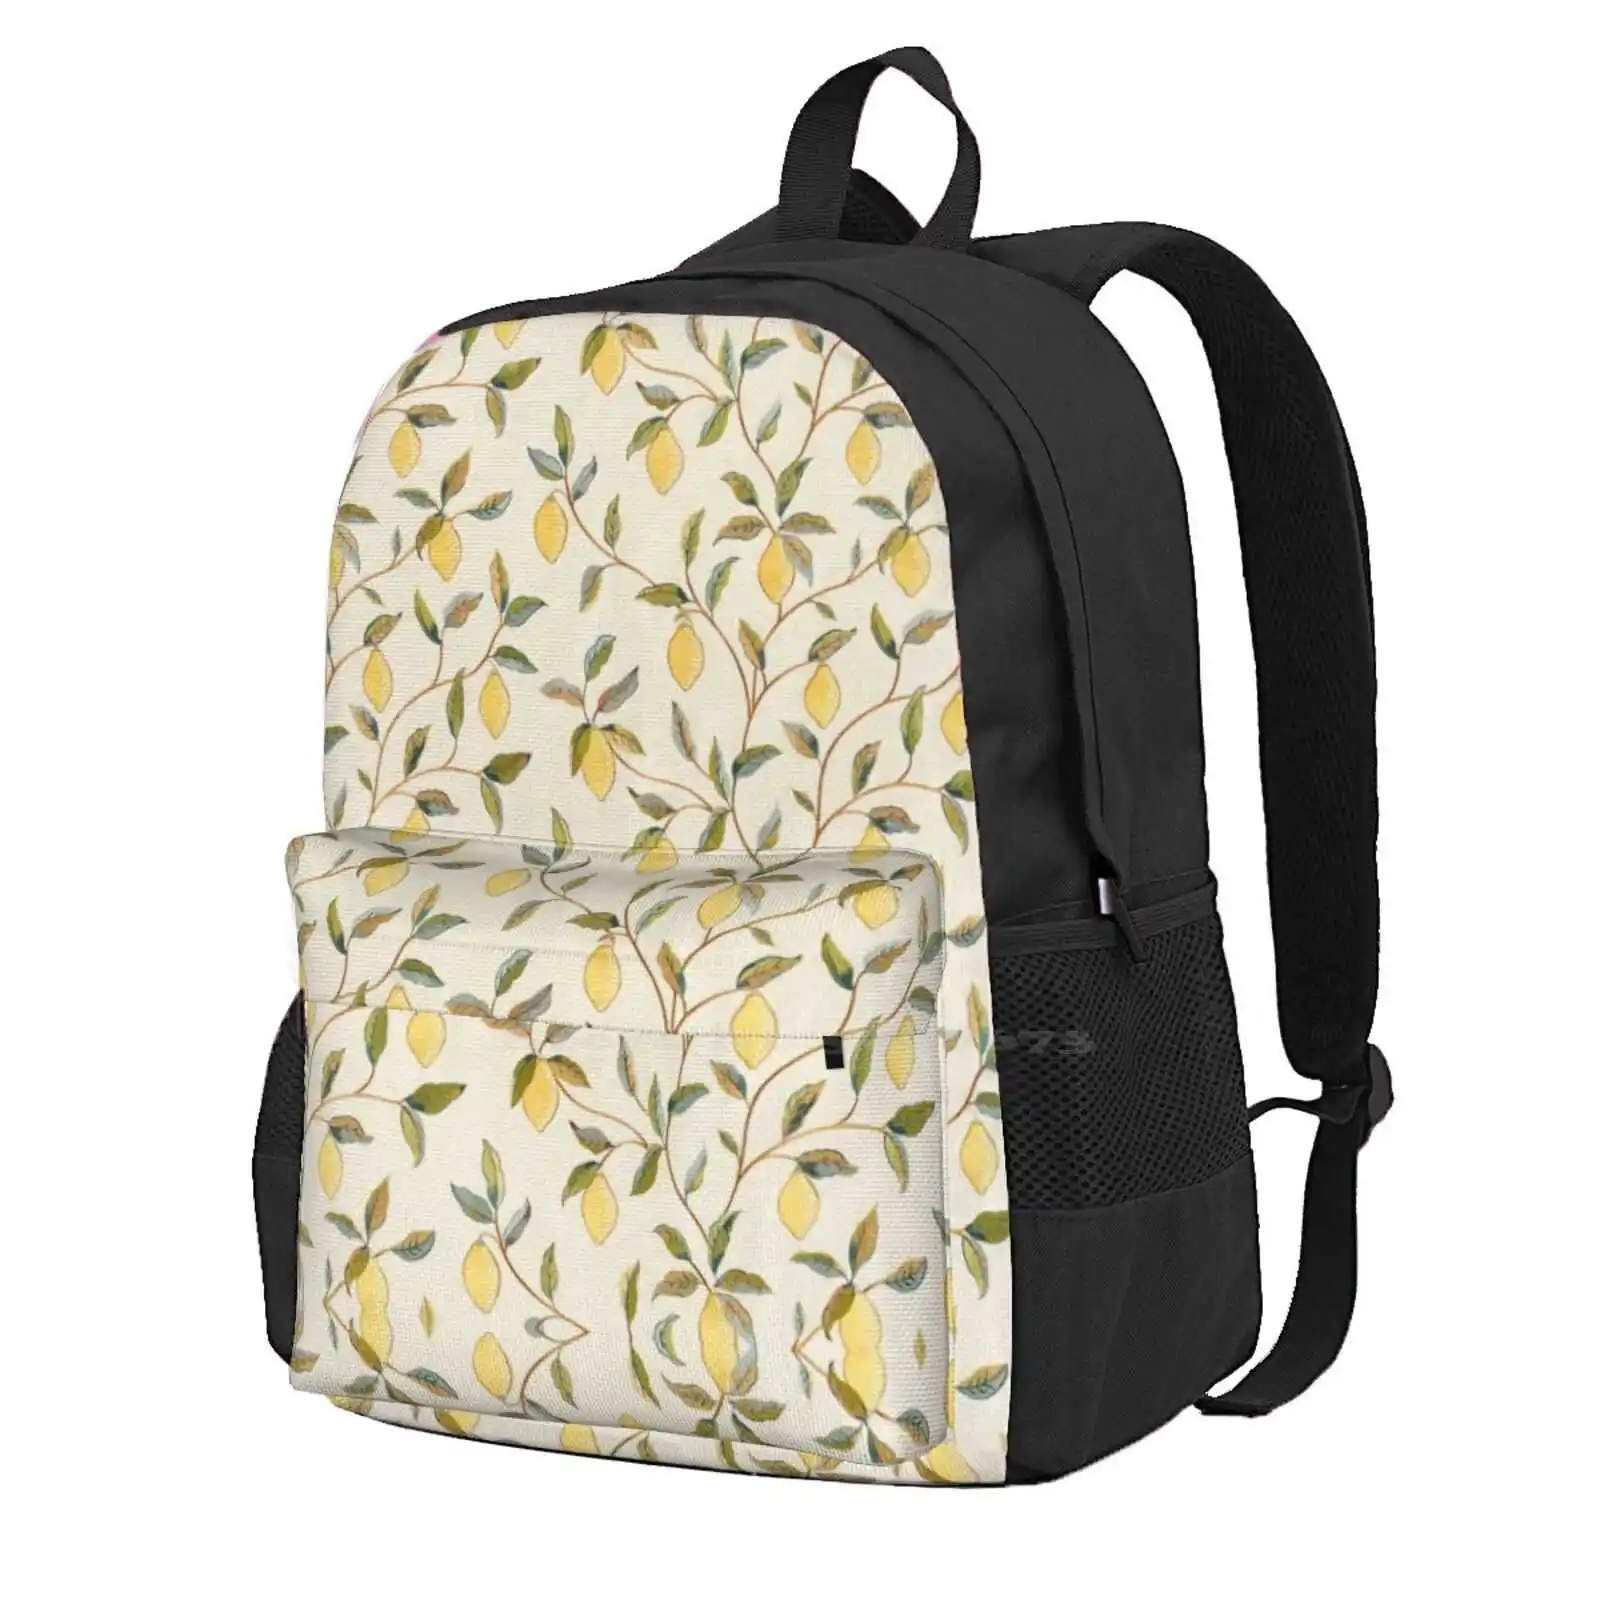 William Morris Винтажная школьная сумка с рисунком Лимонного дерева от Melsetter Bayleaf, большой емкости, рюкзак для ноутбука, 15-дюймовое Цветочное искусство